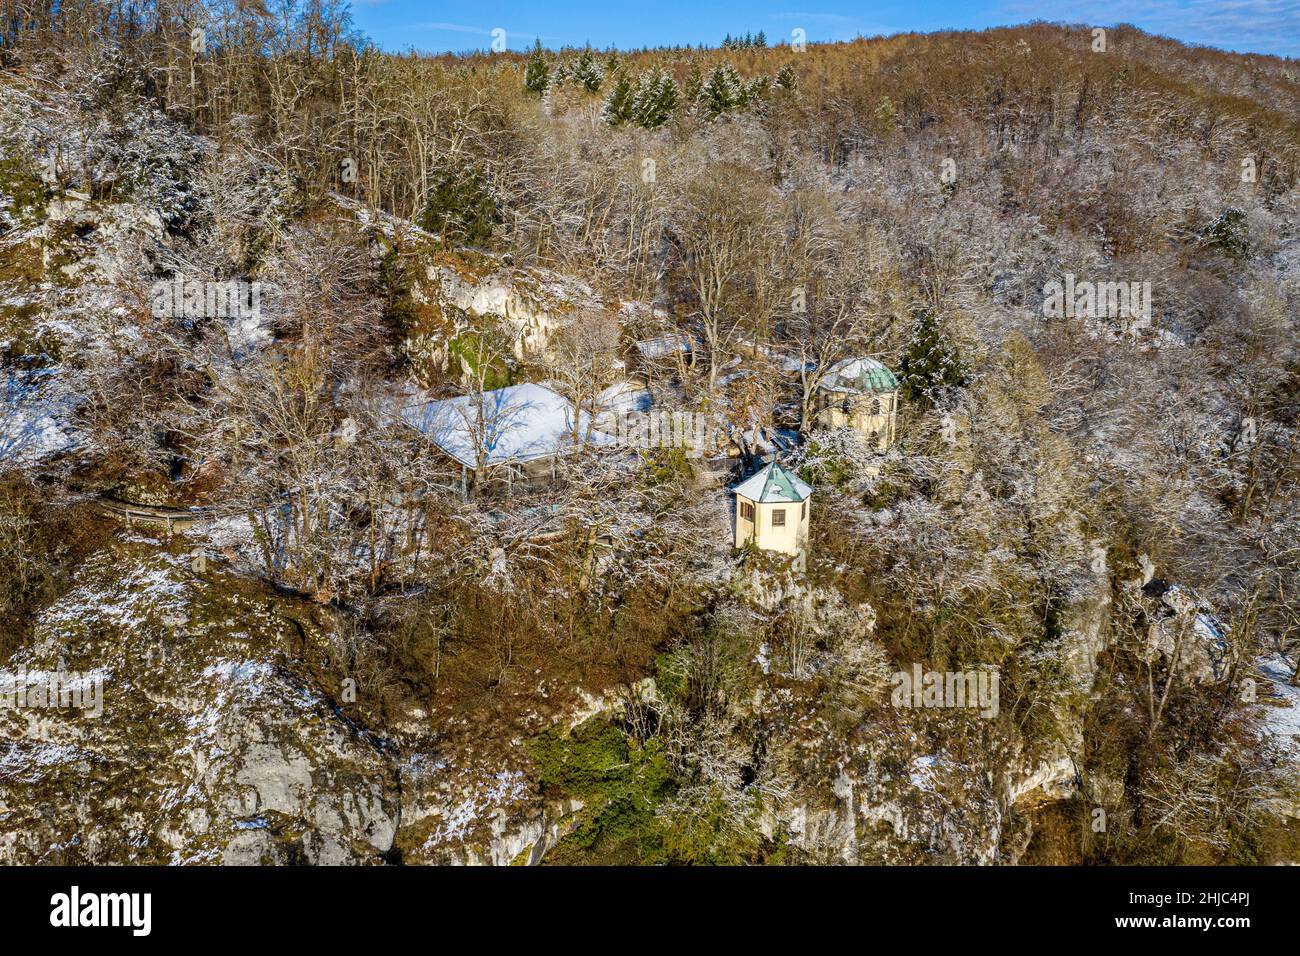 Vista aérea de la cueva de estalactita Schulerloch en el parque natural Altmühltal cerca de kelheim, baviera, alemania Foto de stock